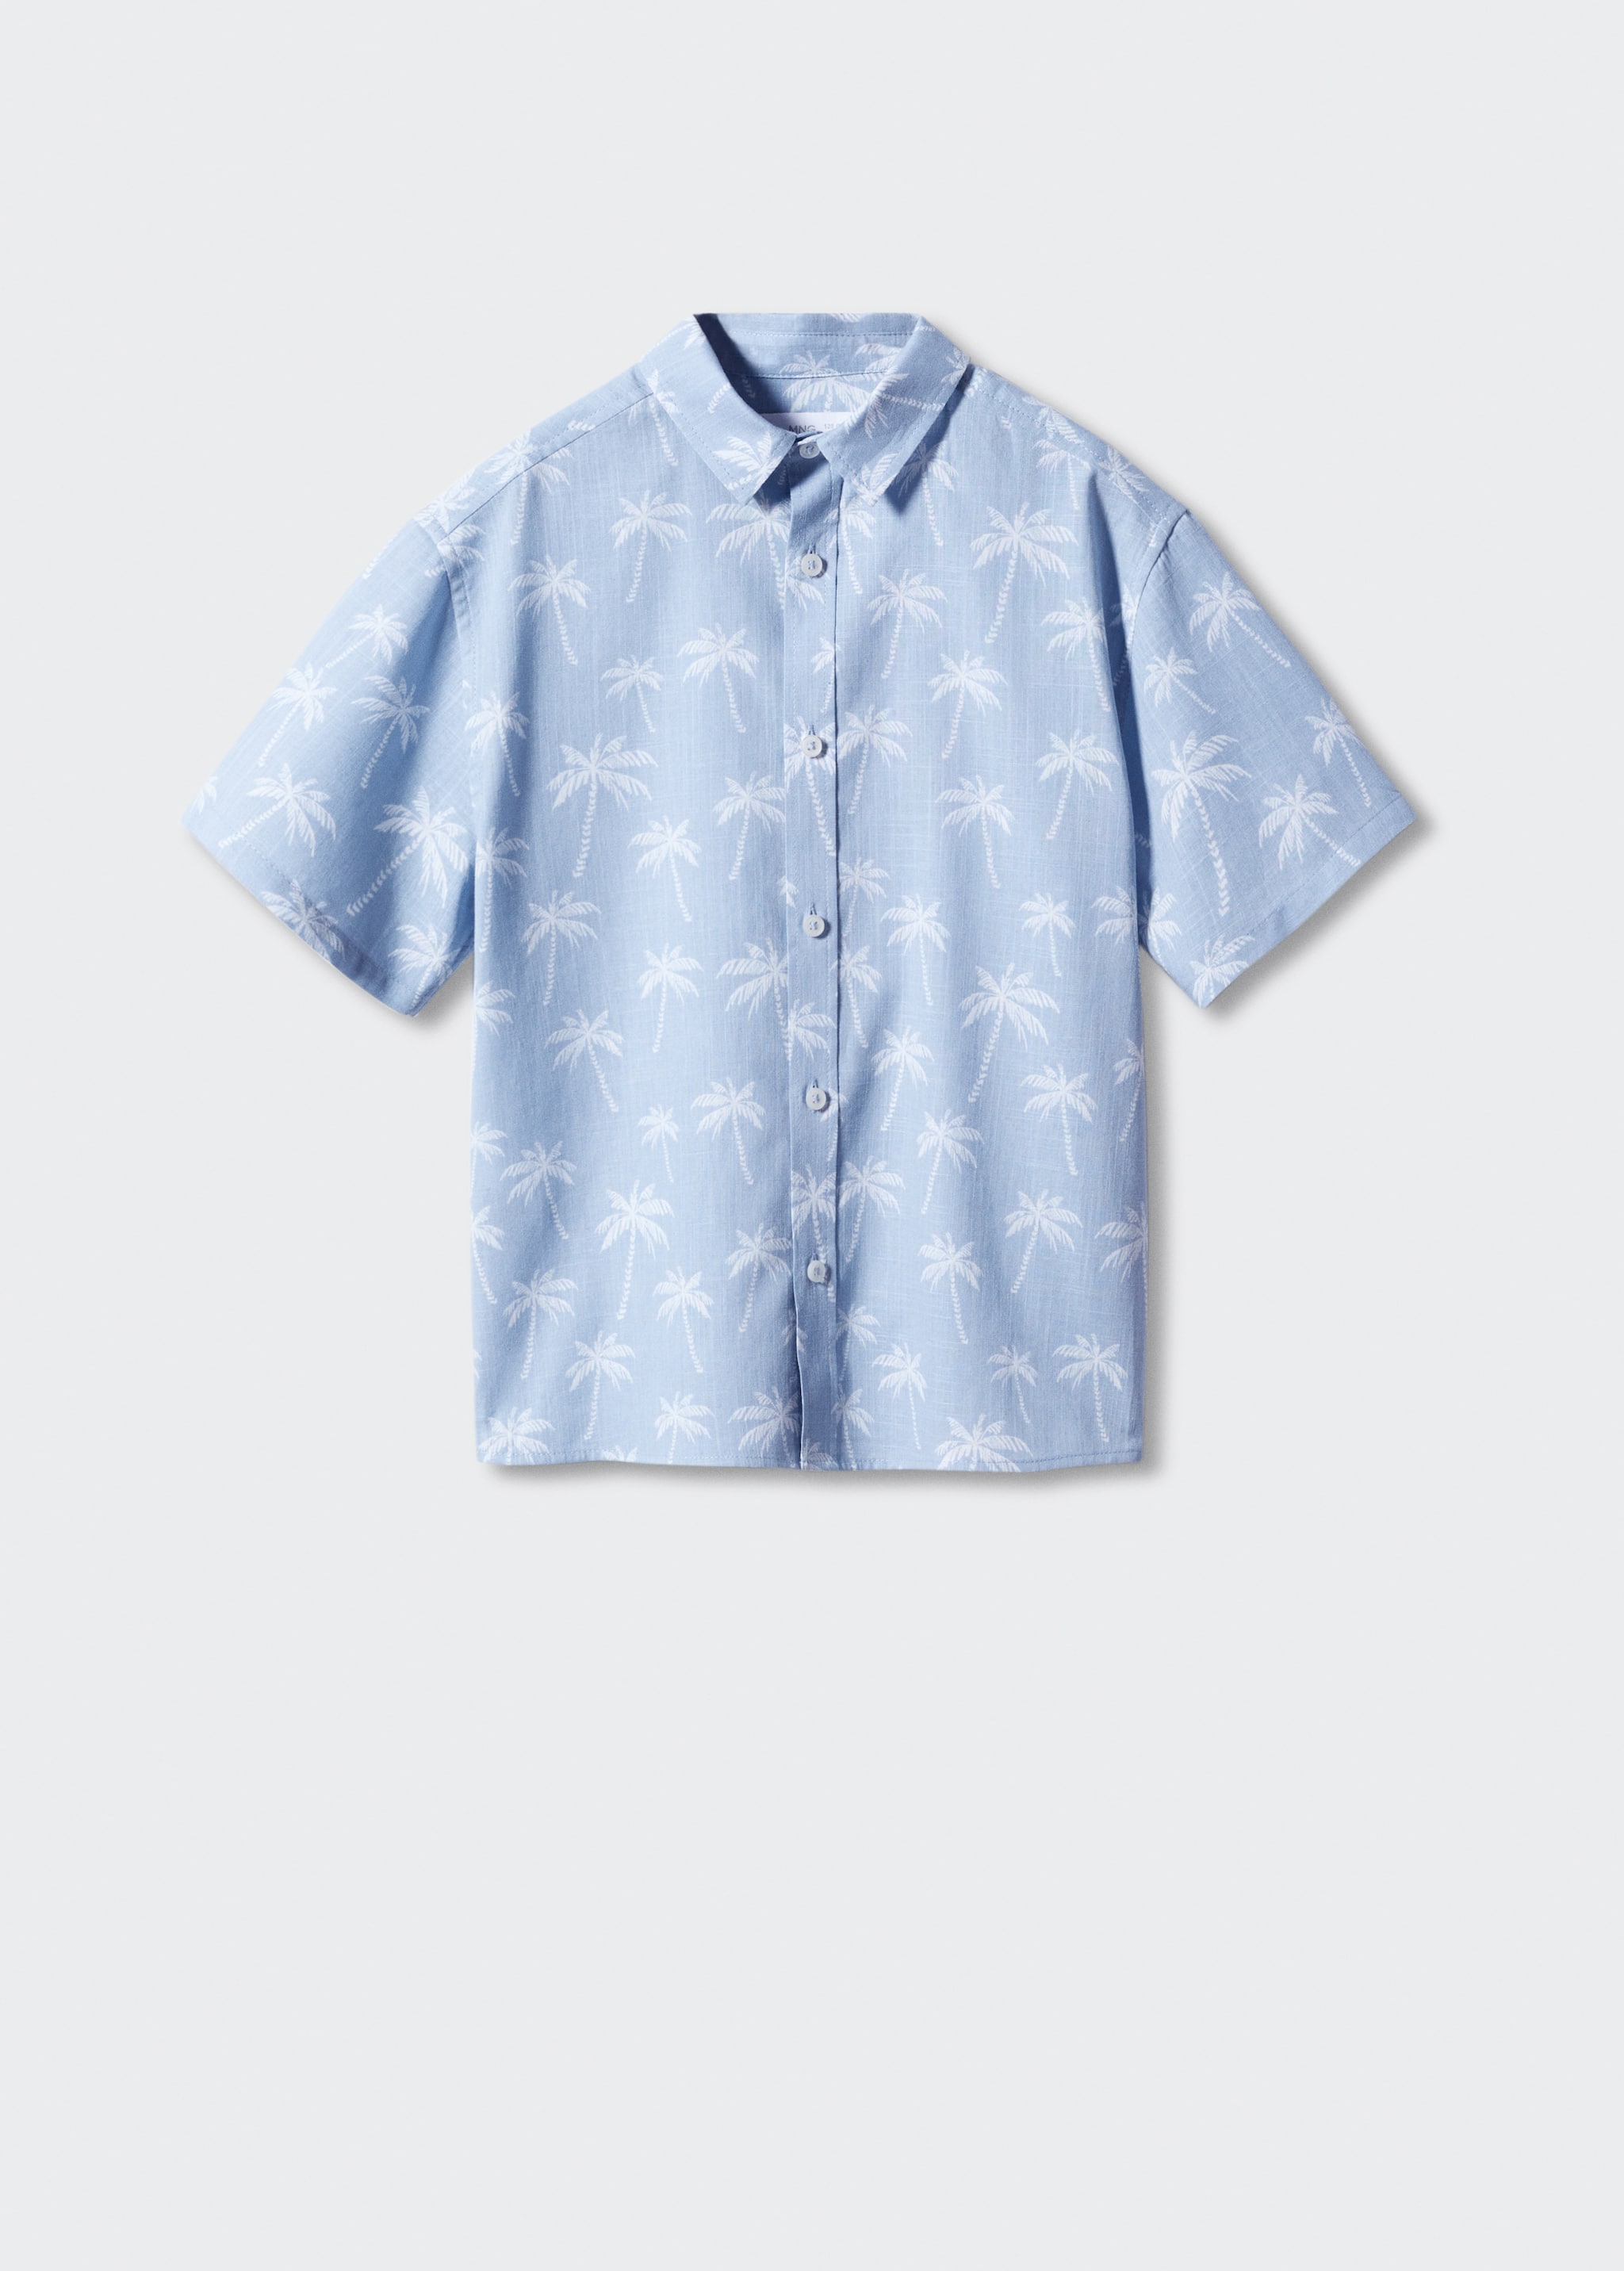 Camisa estampada hawaiana - Article sense model